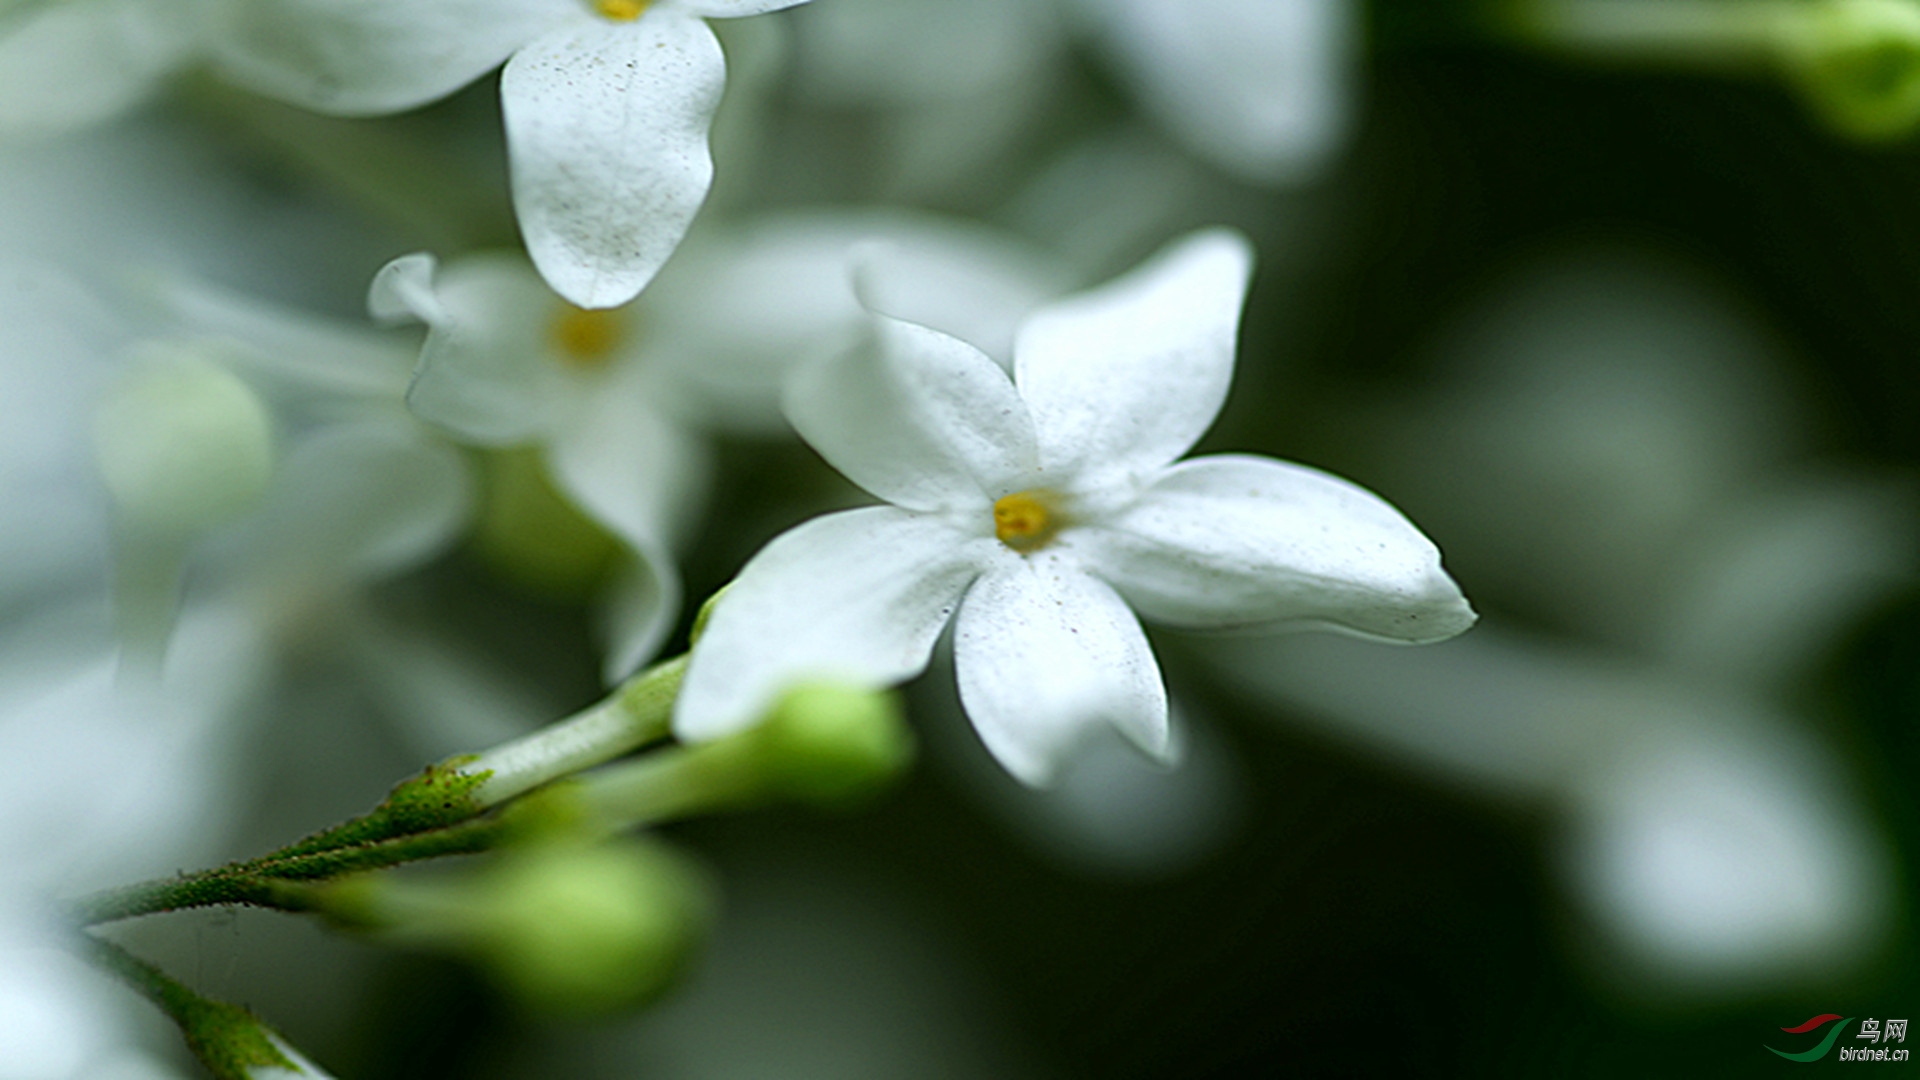 怪异丁香花:五瓣白色丁香花